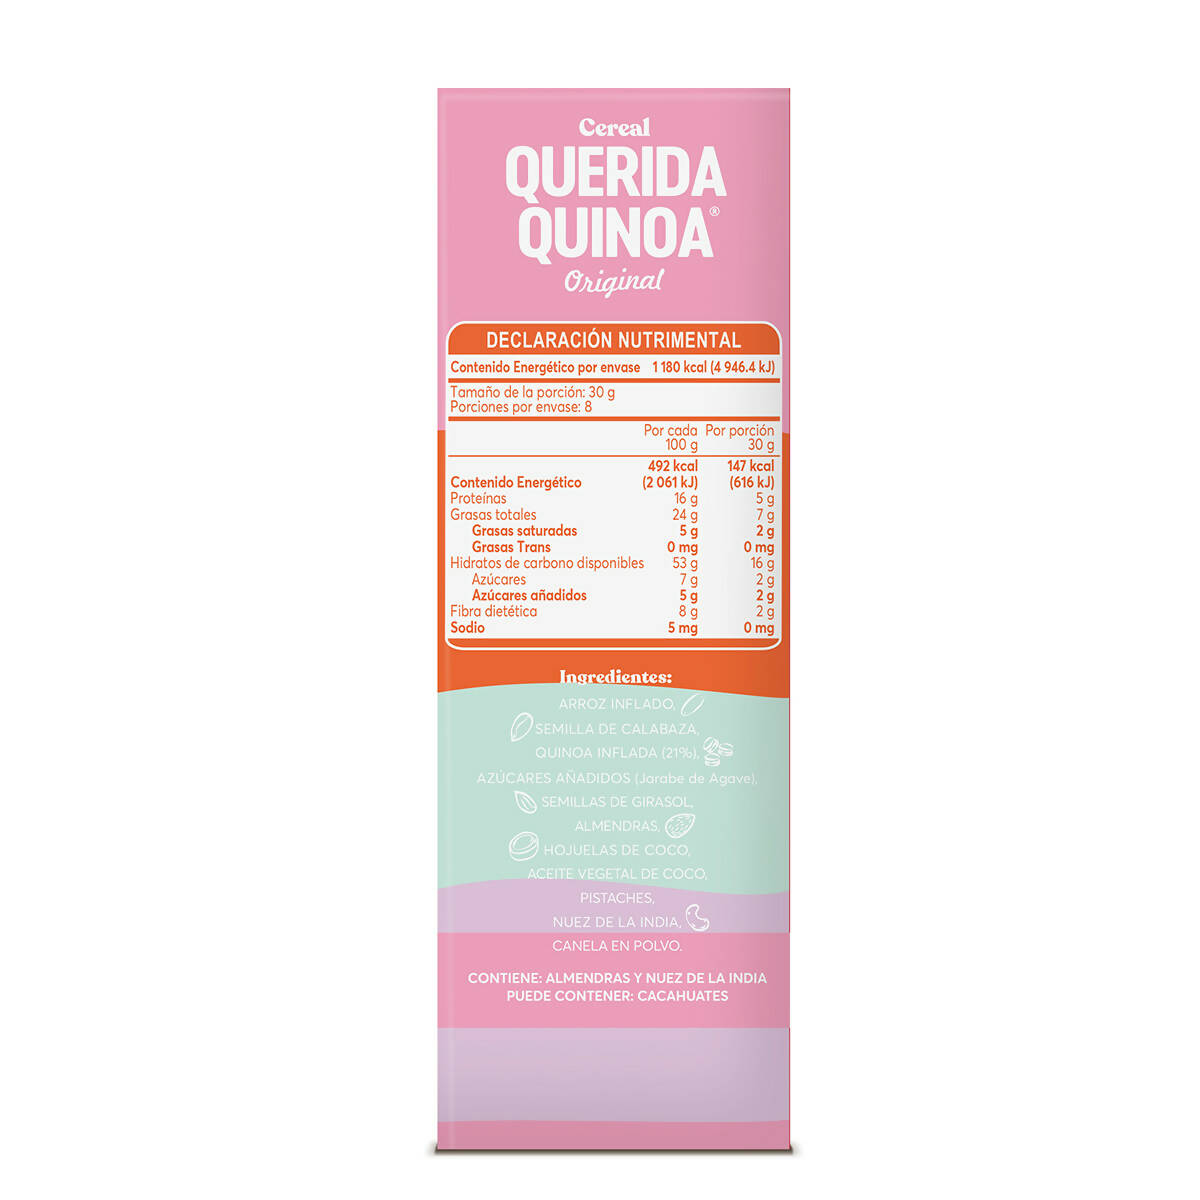 Cereal Querida Quinoa Original